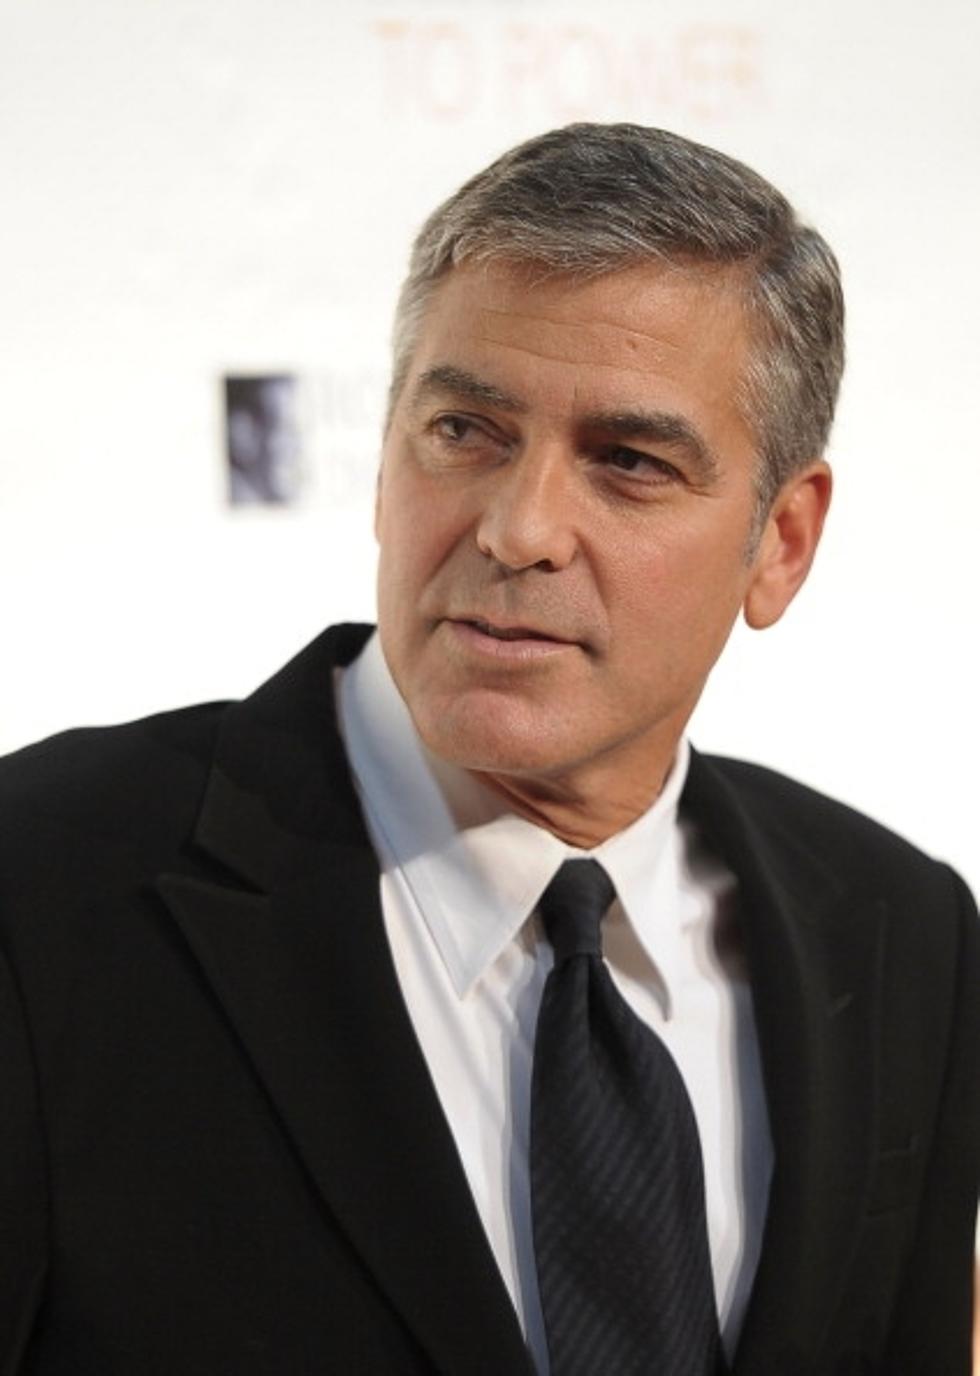 George Clooney Dating Former WWE Wrestler Stacey Keibler